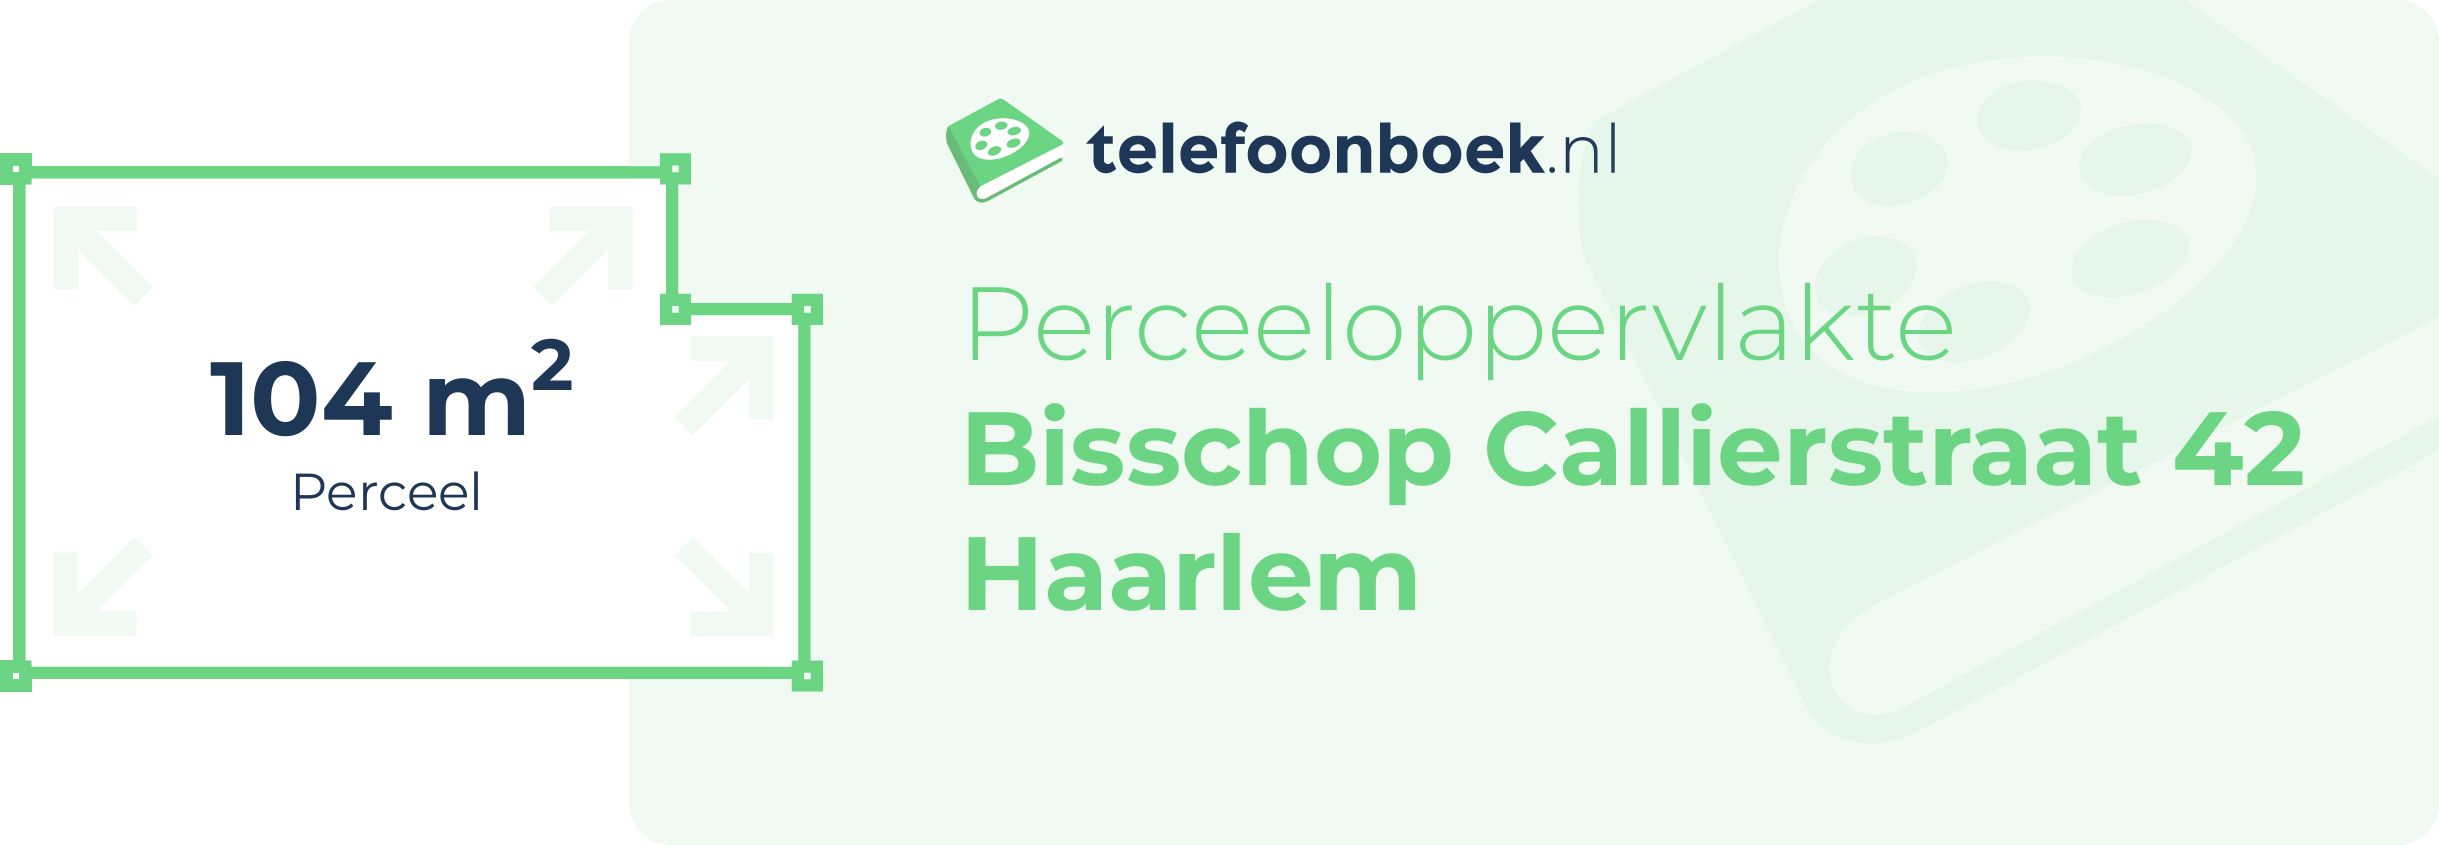 Perceeloppervlakte Bisschop Callierstraat 42 Haarlem